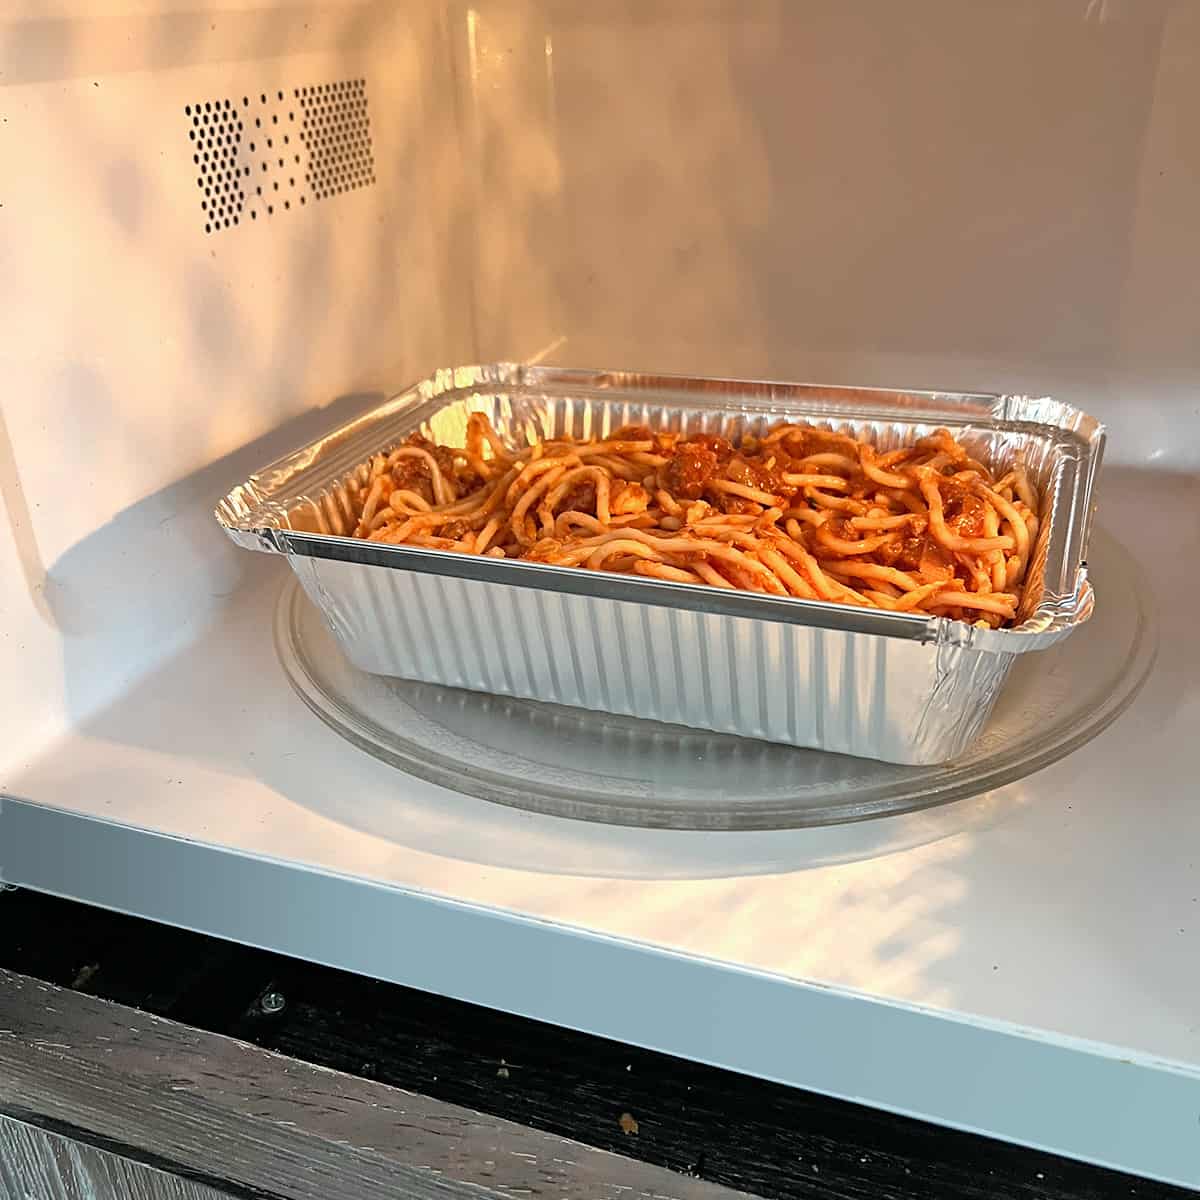 How To Heat Up Food In Aluminium Tray